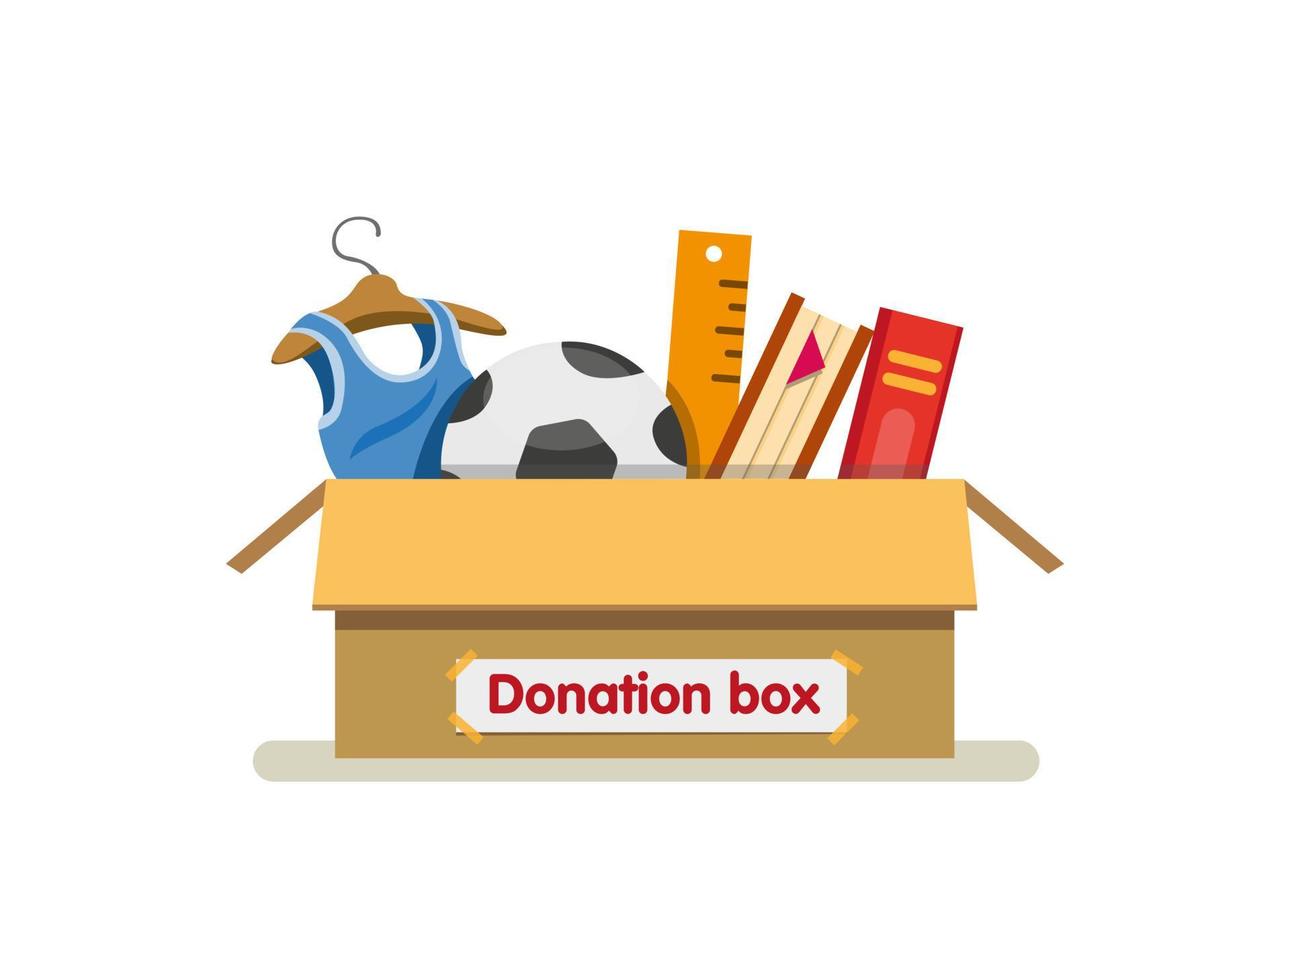 livros, brinquedos e roupas em papelão de caixa de doação pronto para enviar para caridade em vetor de ilustração plana de desenho animado isolado no fundo branco